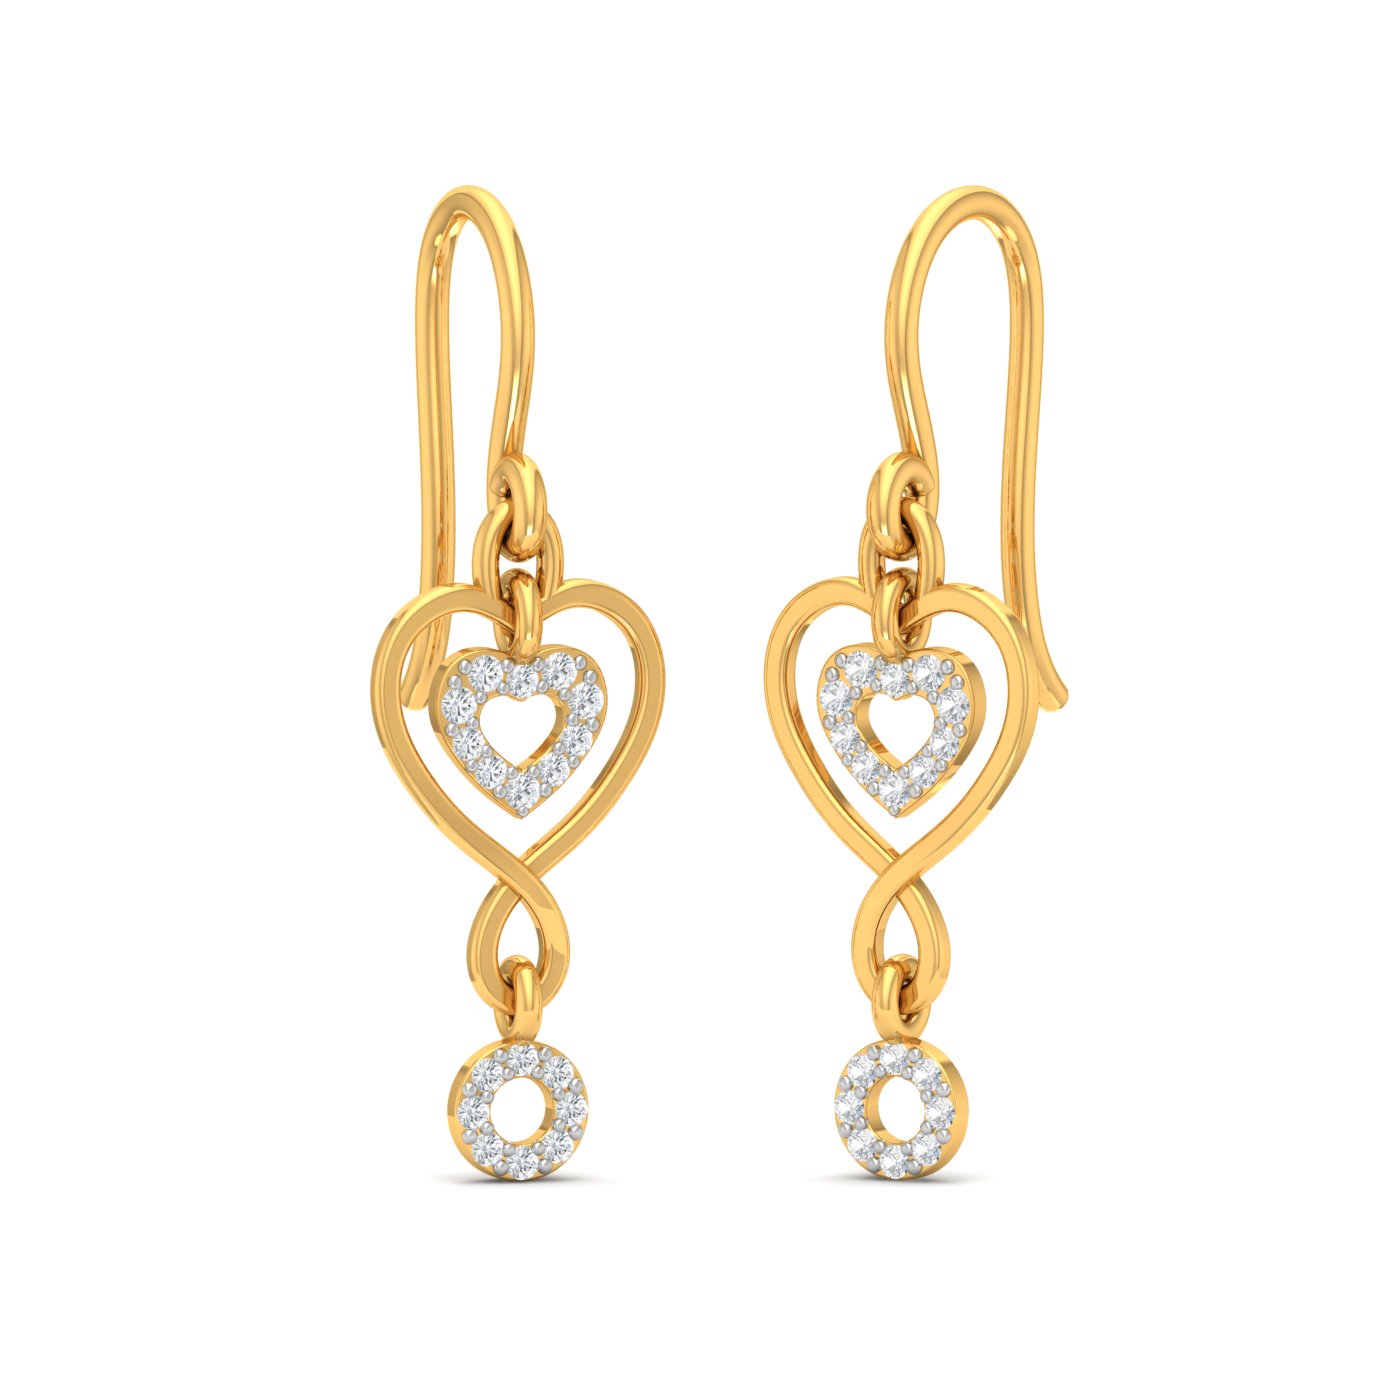 gold earrings design in 2 grams HEART SHAPE DROPLET DIAMOND EARRINGS